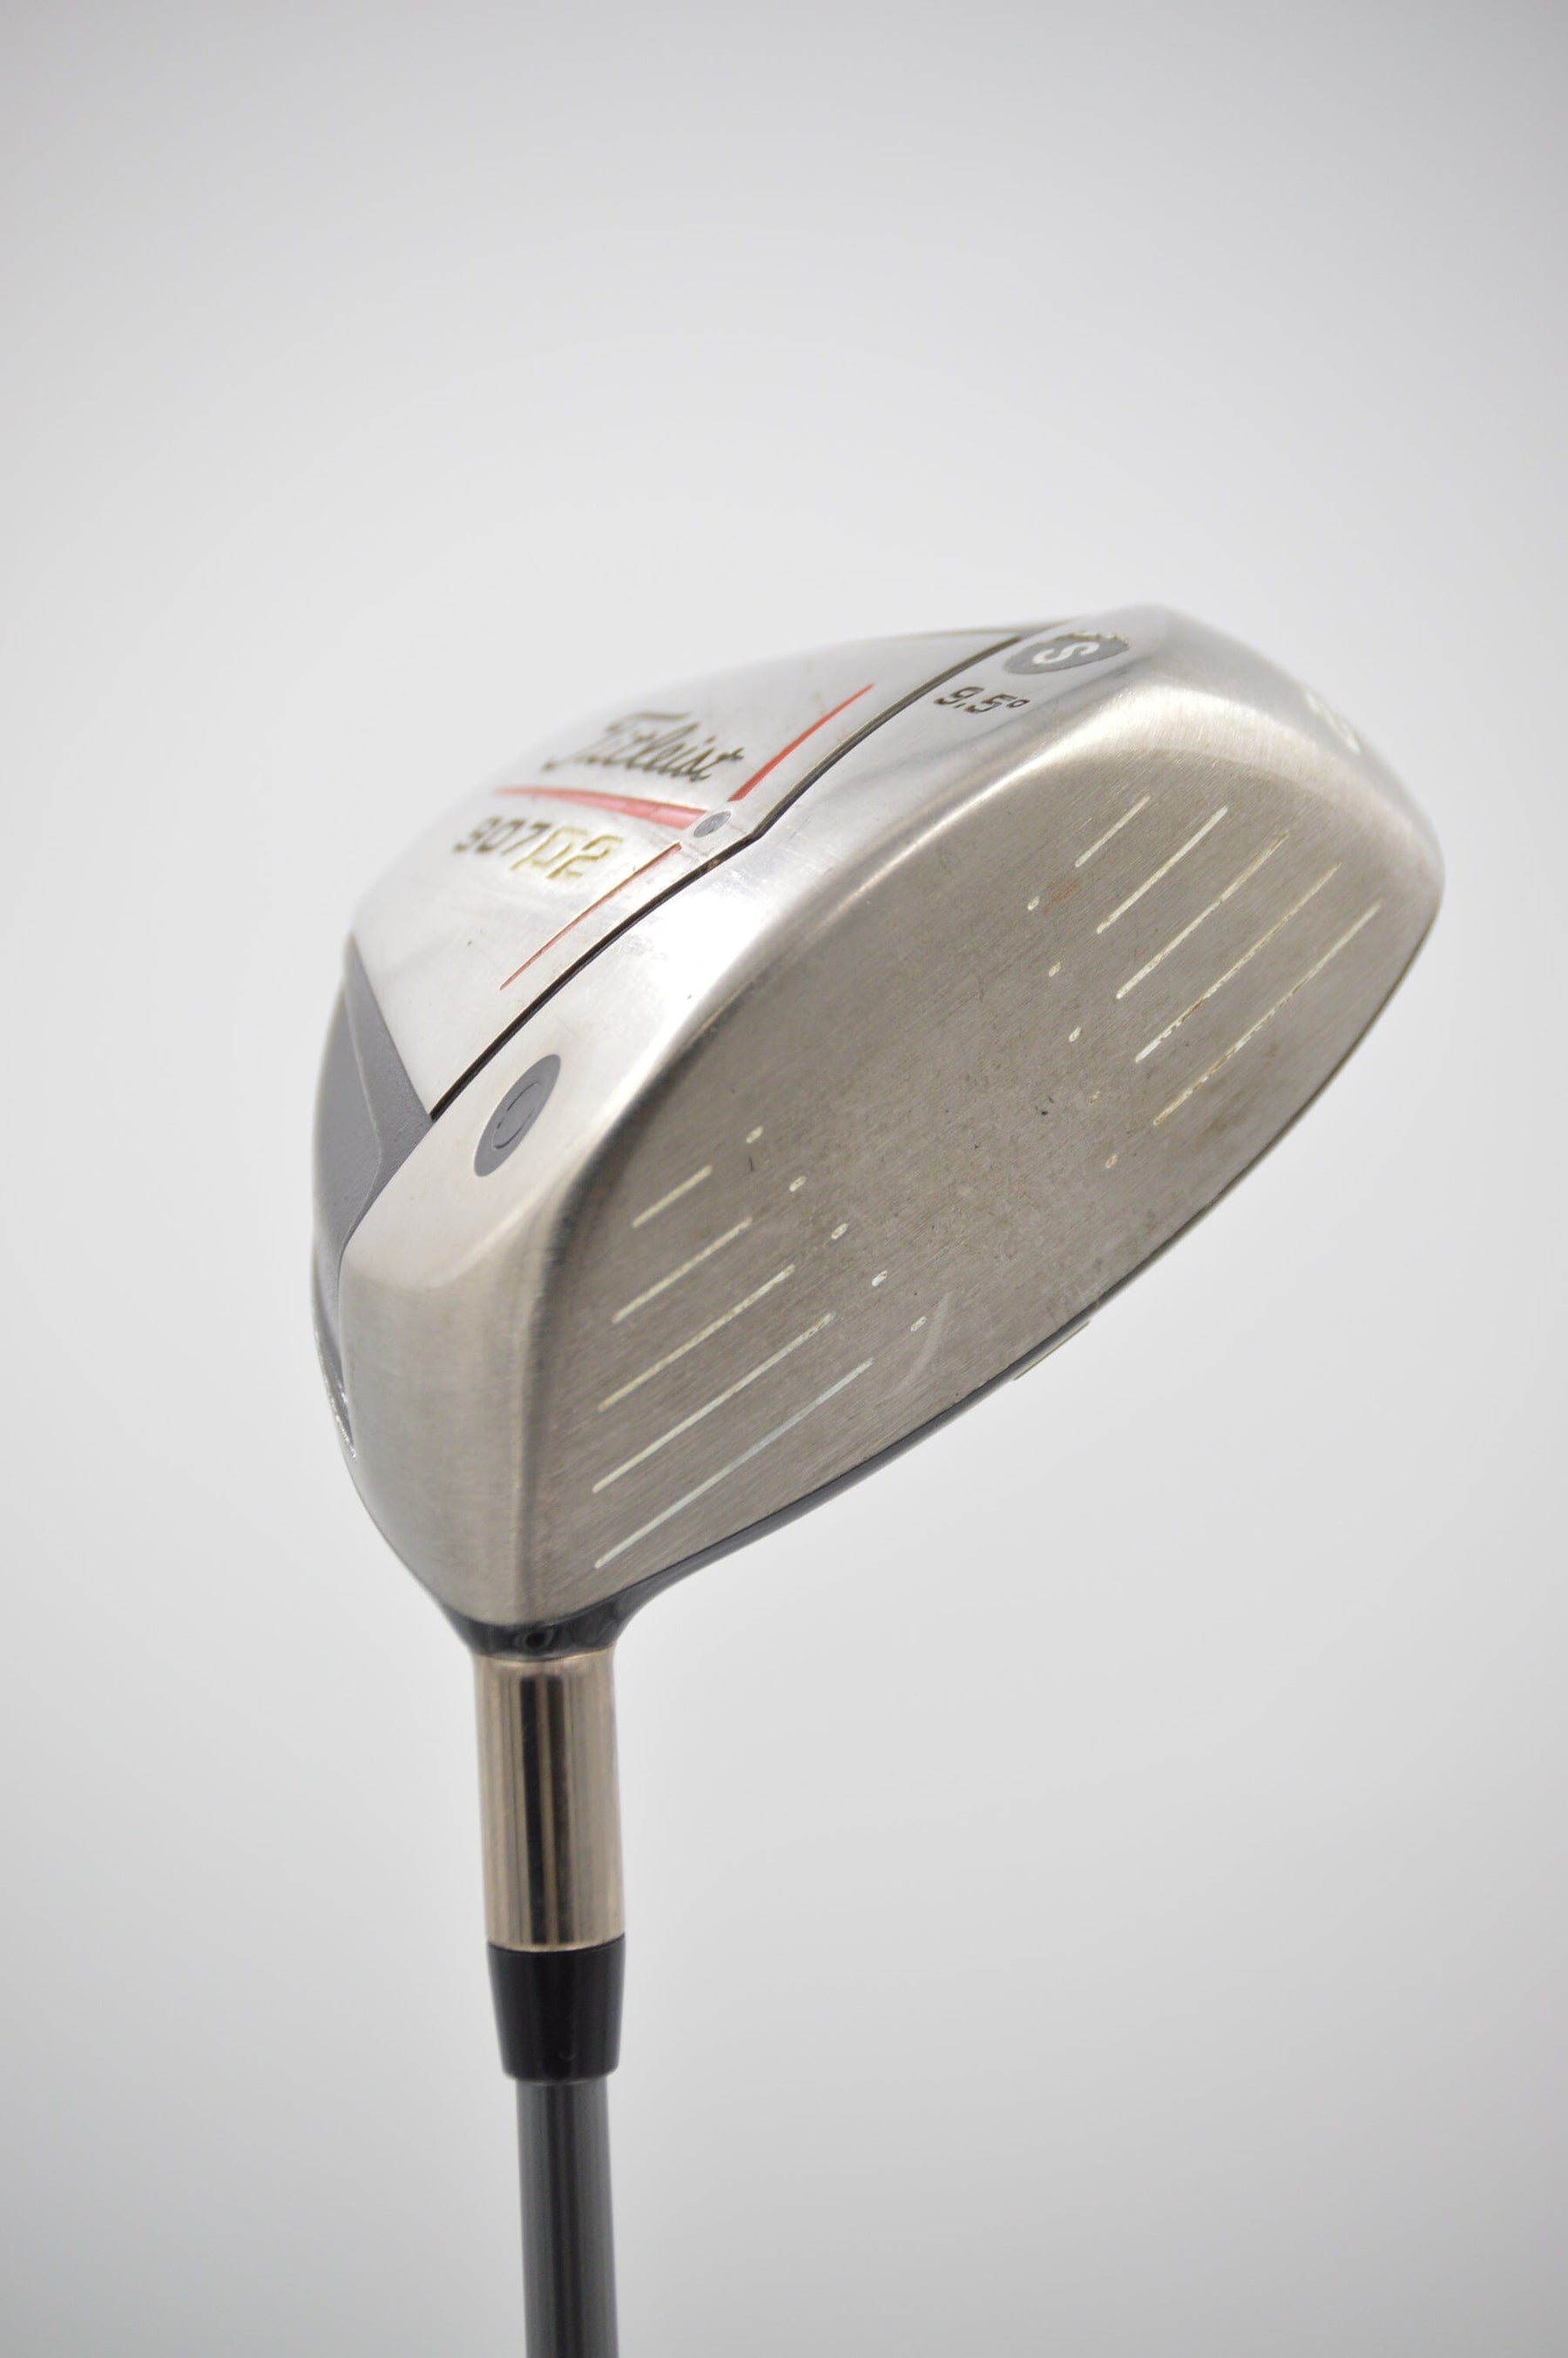 Titleist 907D2 9.5 Degree Driver S Flex Golf Clubs GolfRoots 